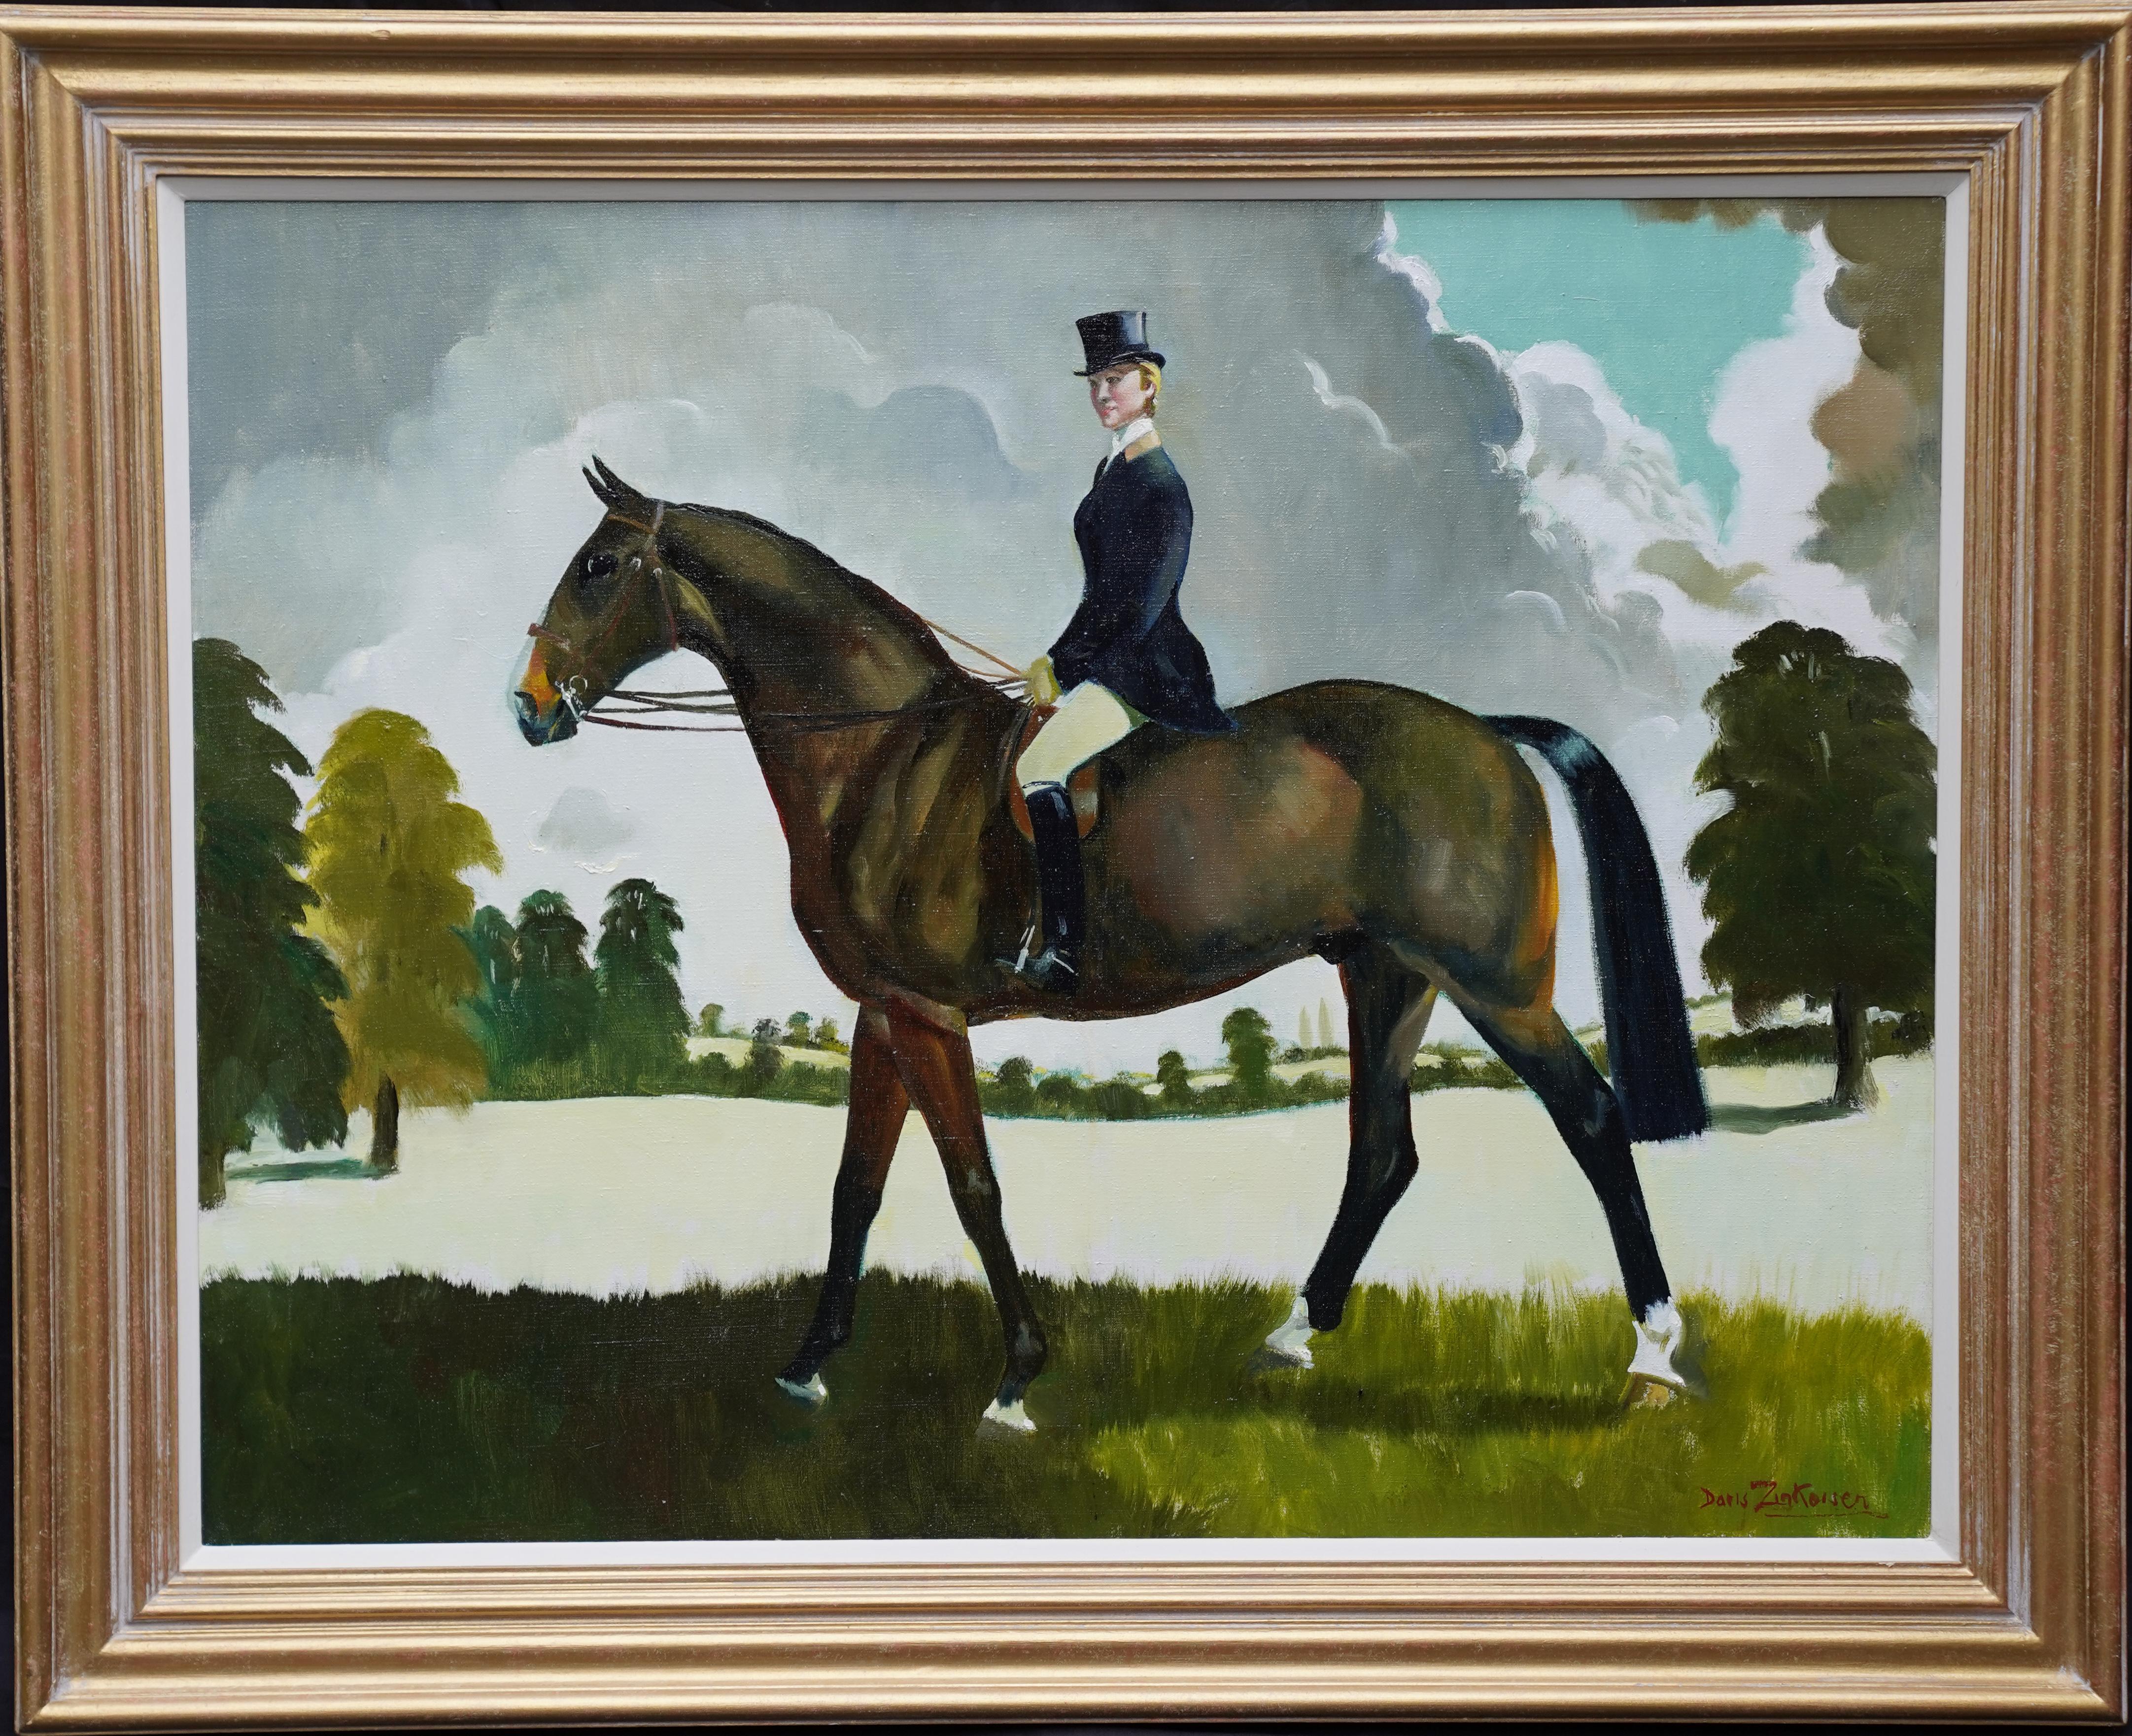 Animal Painting Doris Zinkeisen - Miss Moggy Hennesey on her Hunter - Peinture à l'huile d'un portrait de cheval d'art écossais des années 60